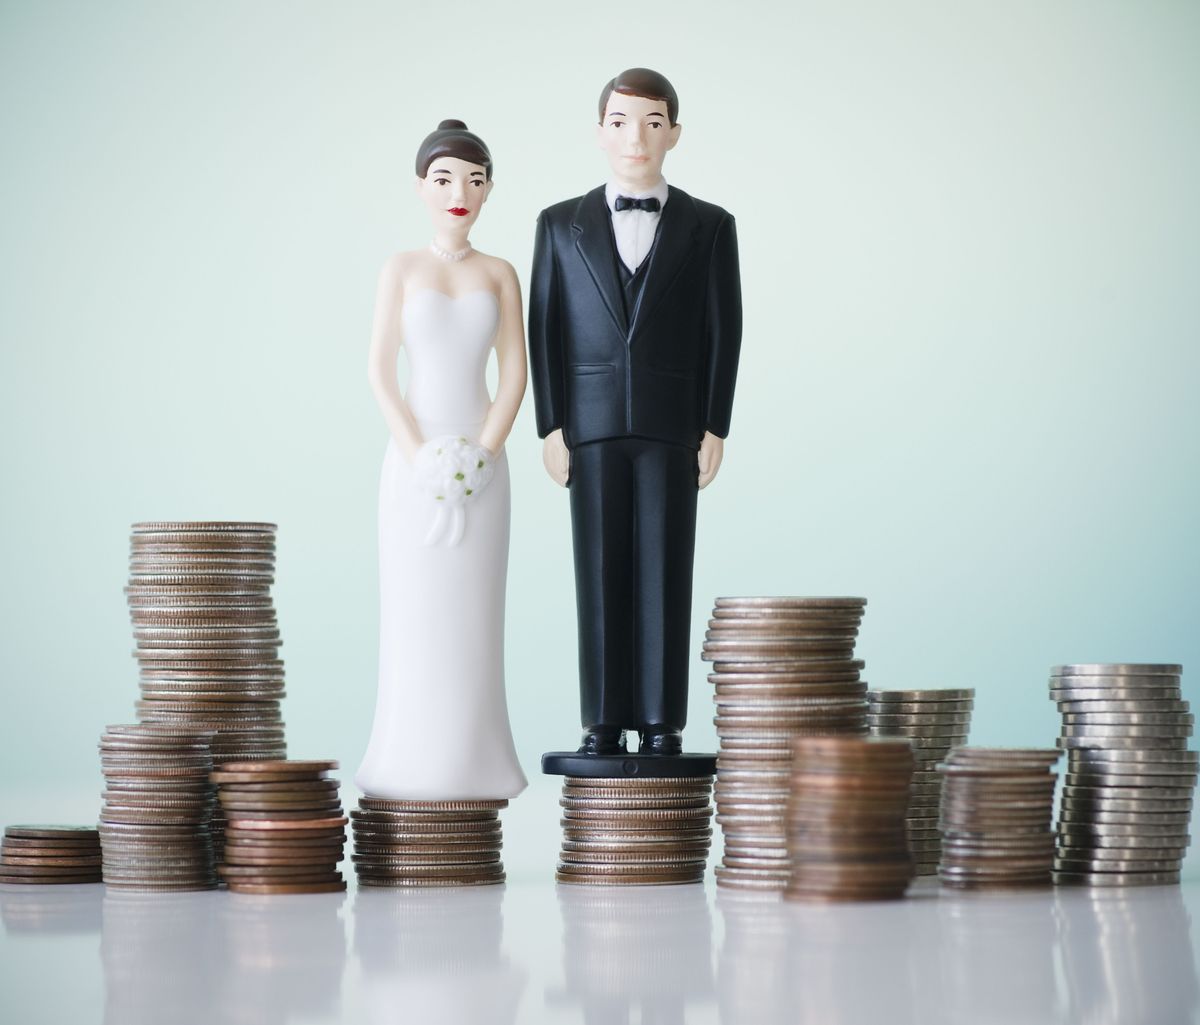 Quem paga o que em um casamento?